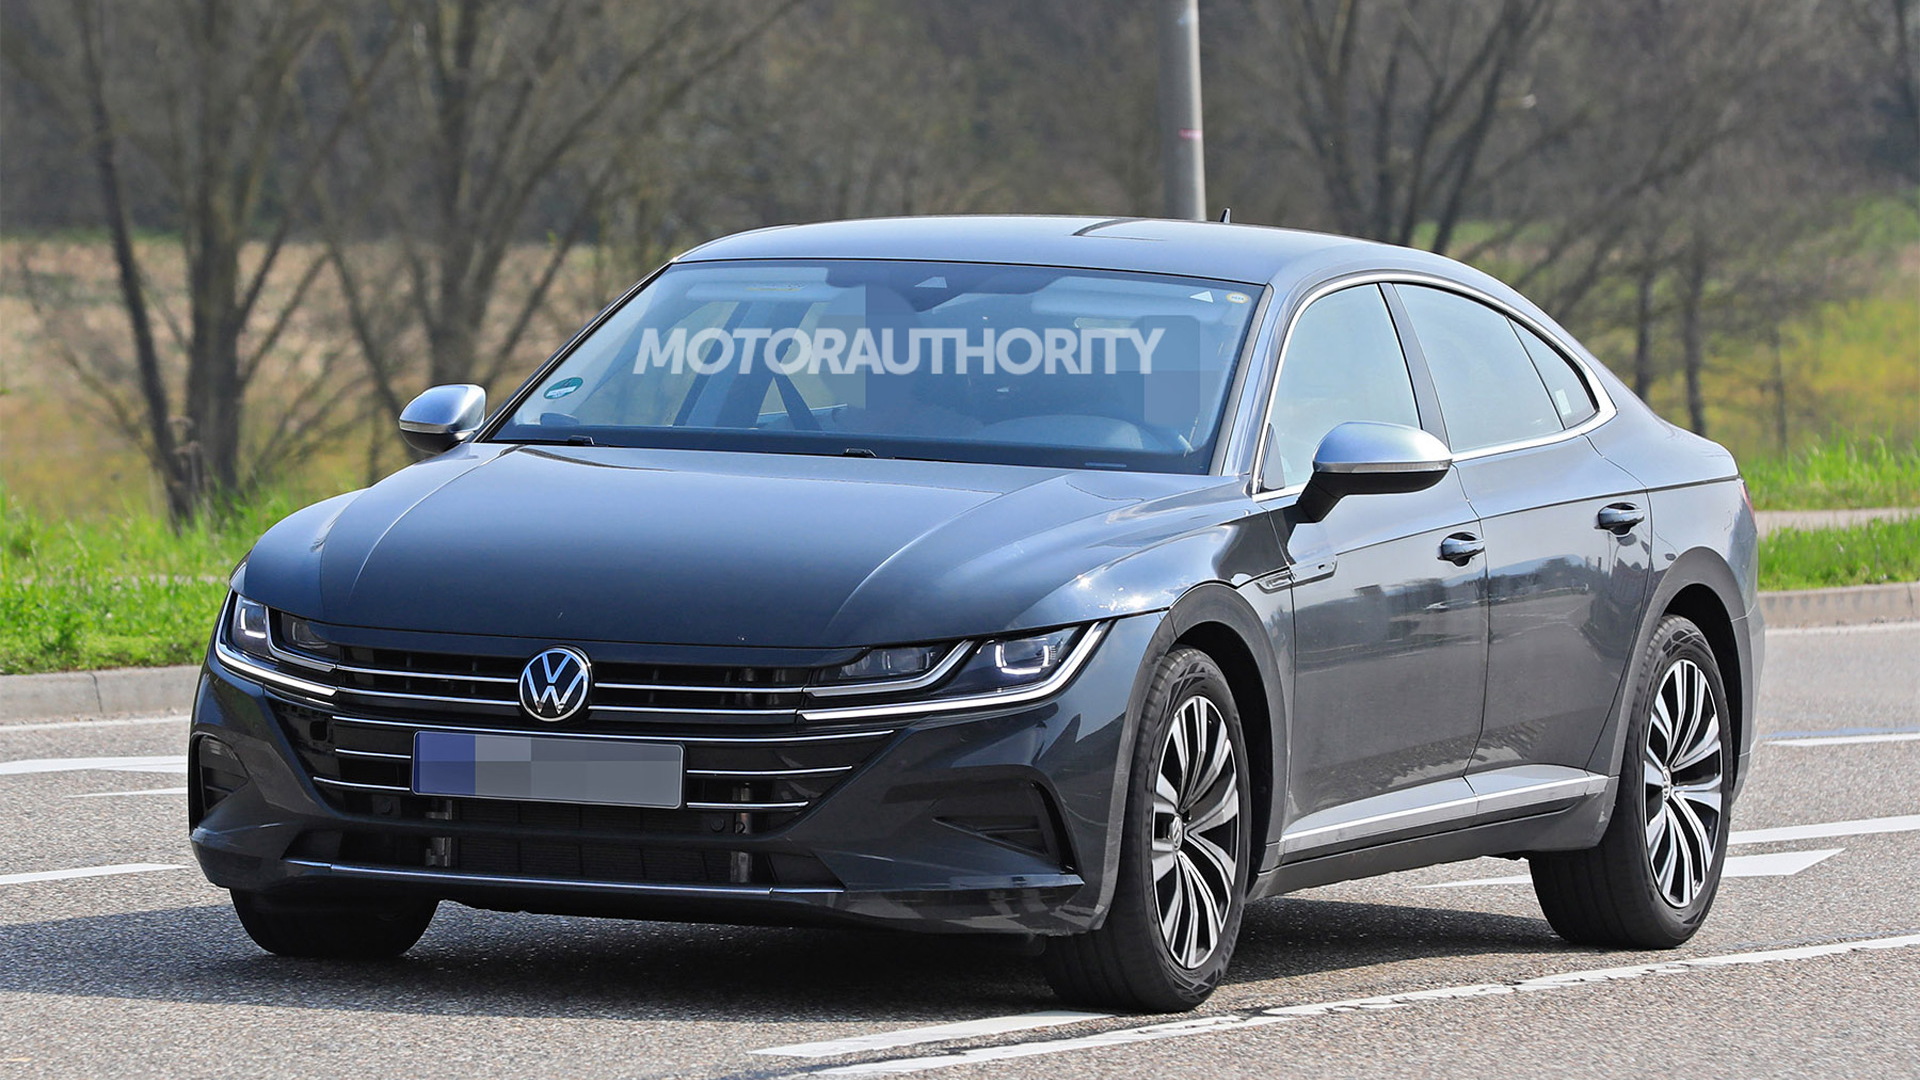 2021 Volkswagen Arteon facelift spy shots - Photo credit: S. Baldauf/SB-Medien